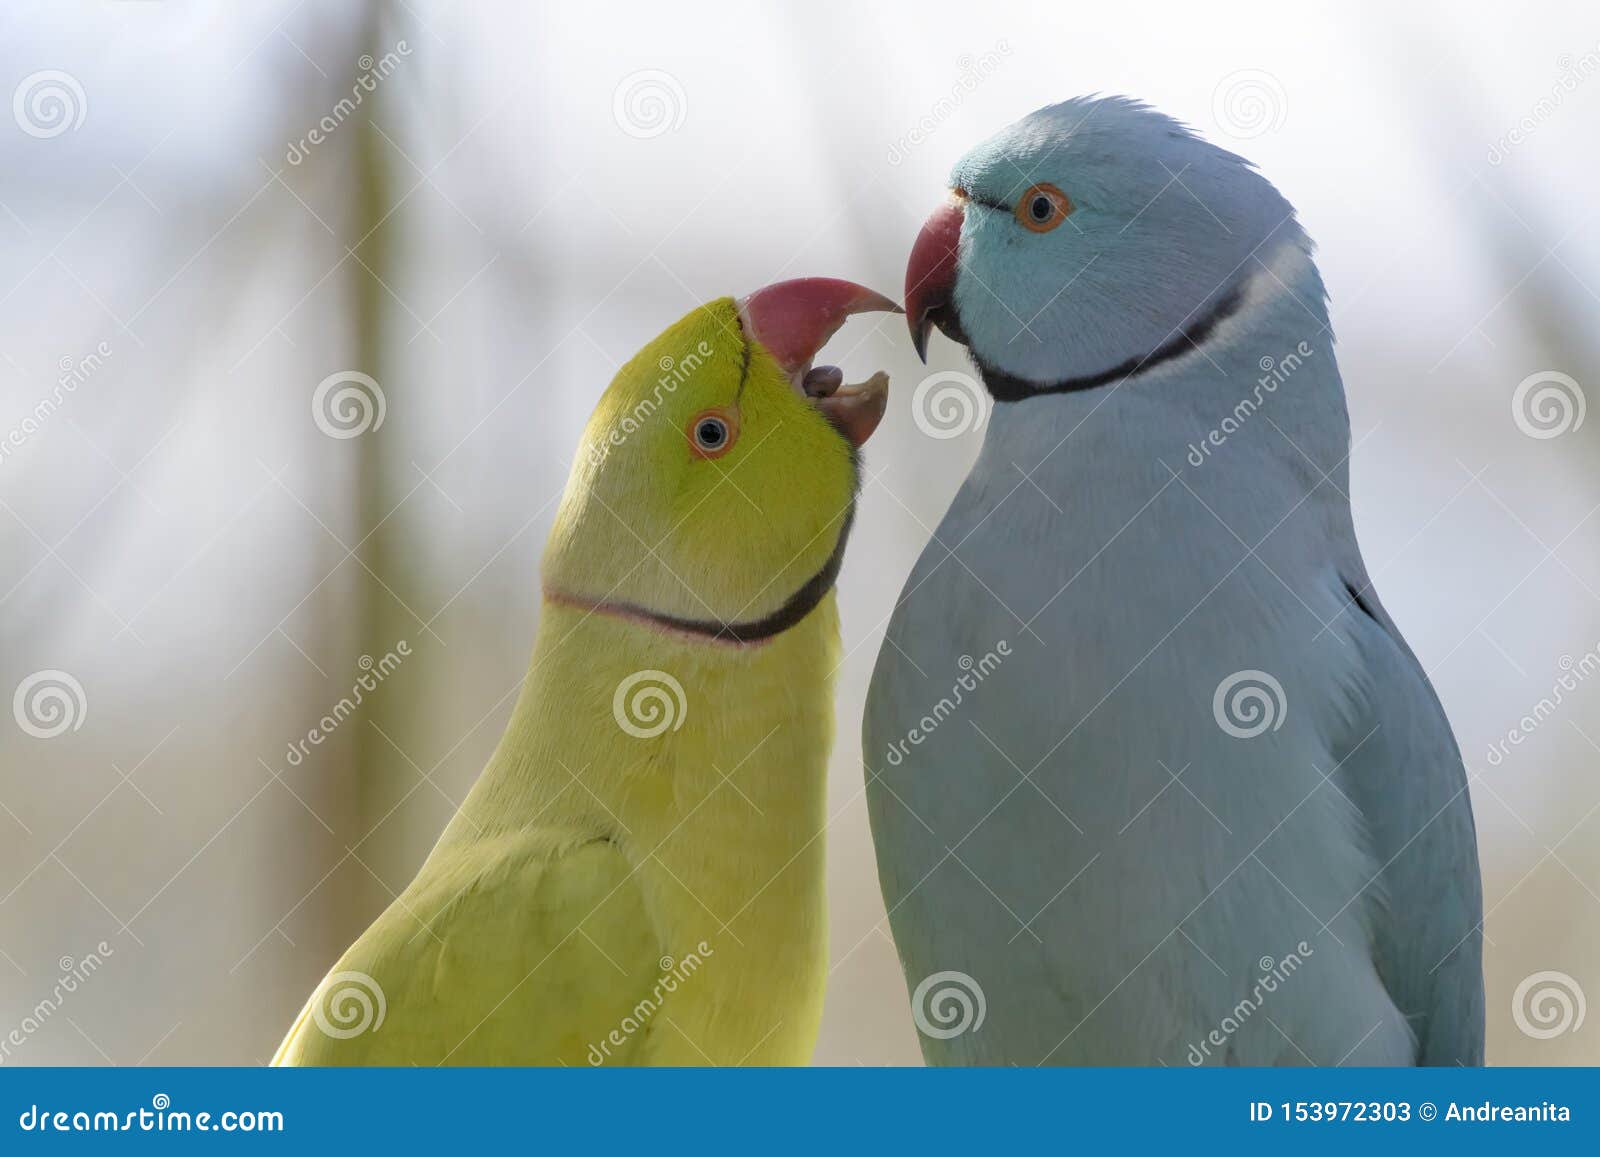 rose ringed parakeet pair courtship rose ringed parakeet psittacula krameri couple courting birds eden parc south africa 153972303